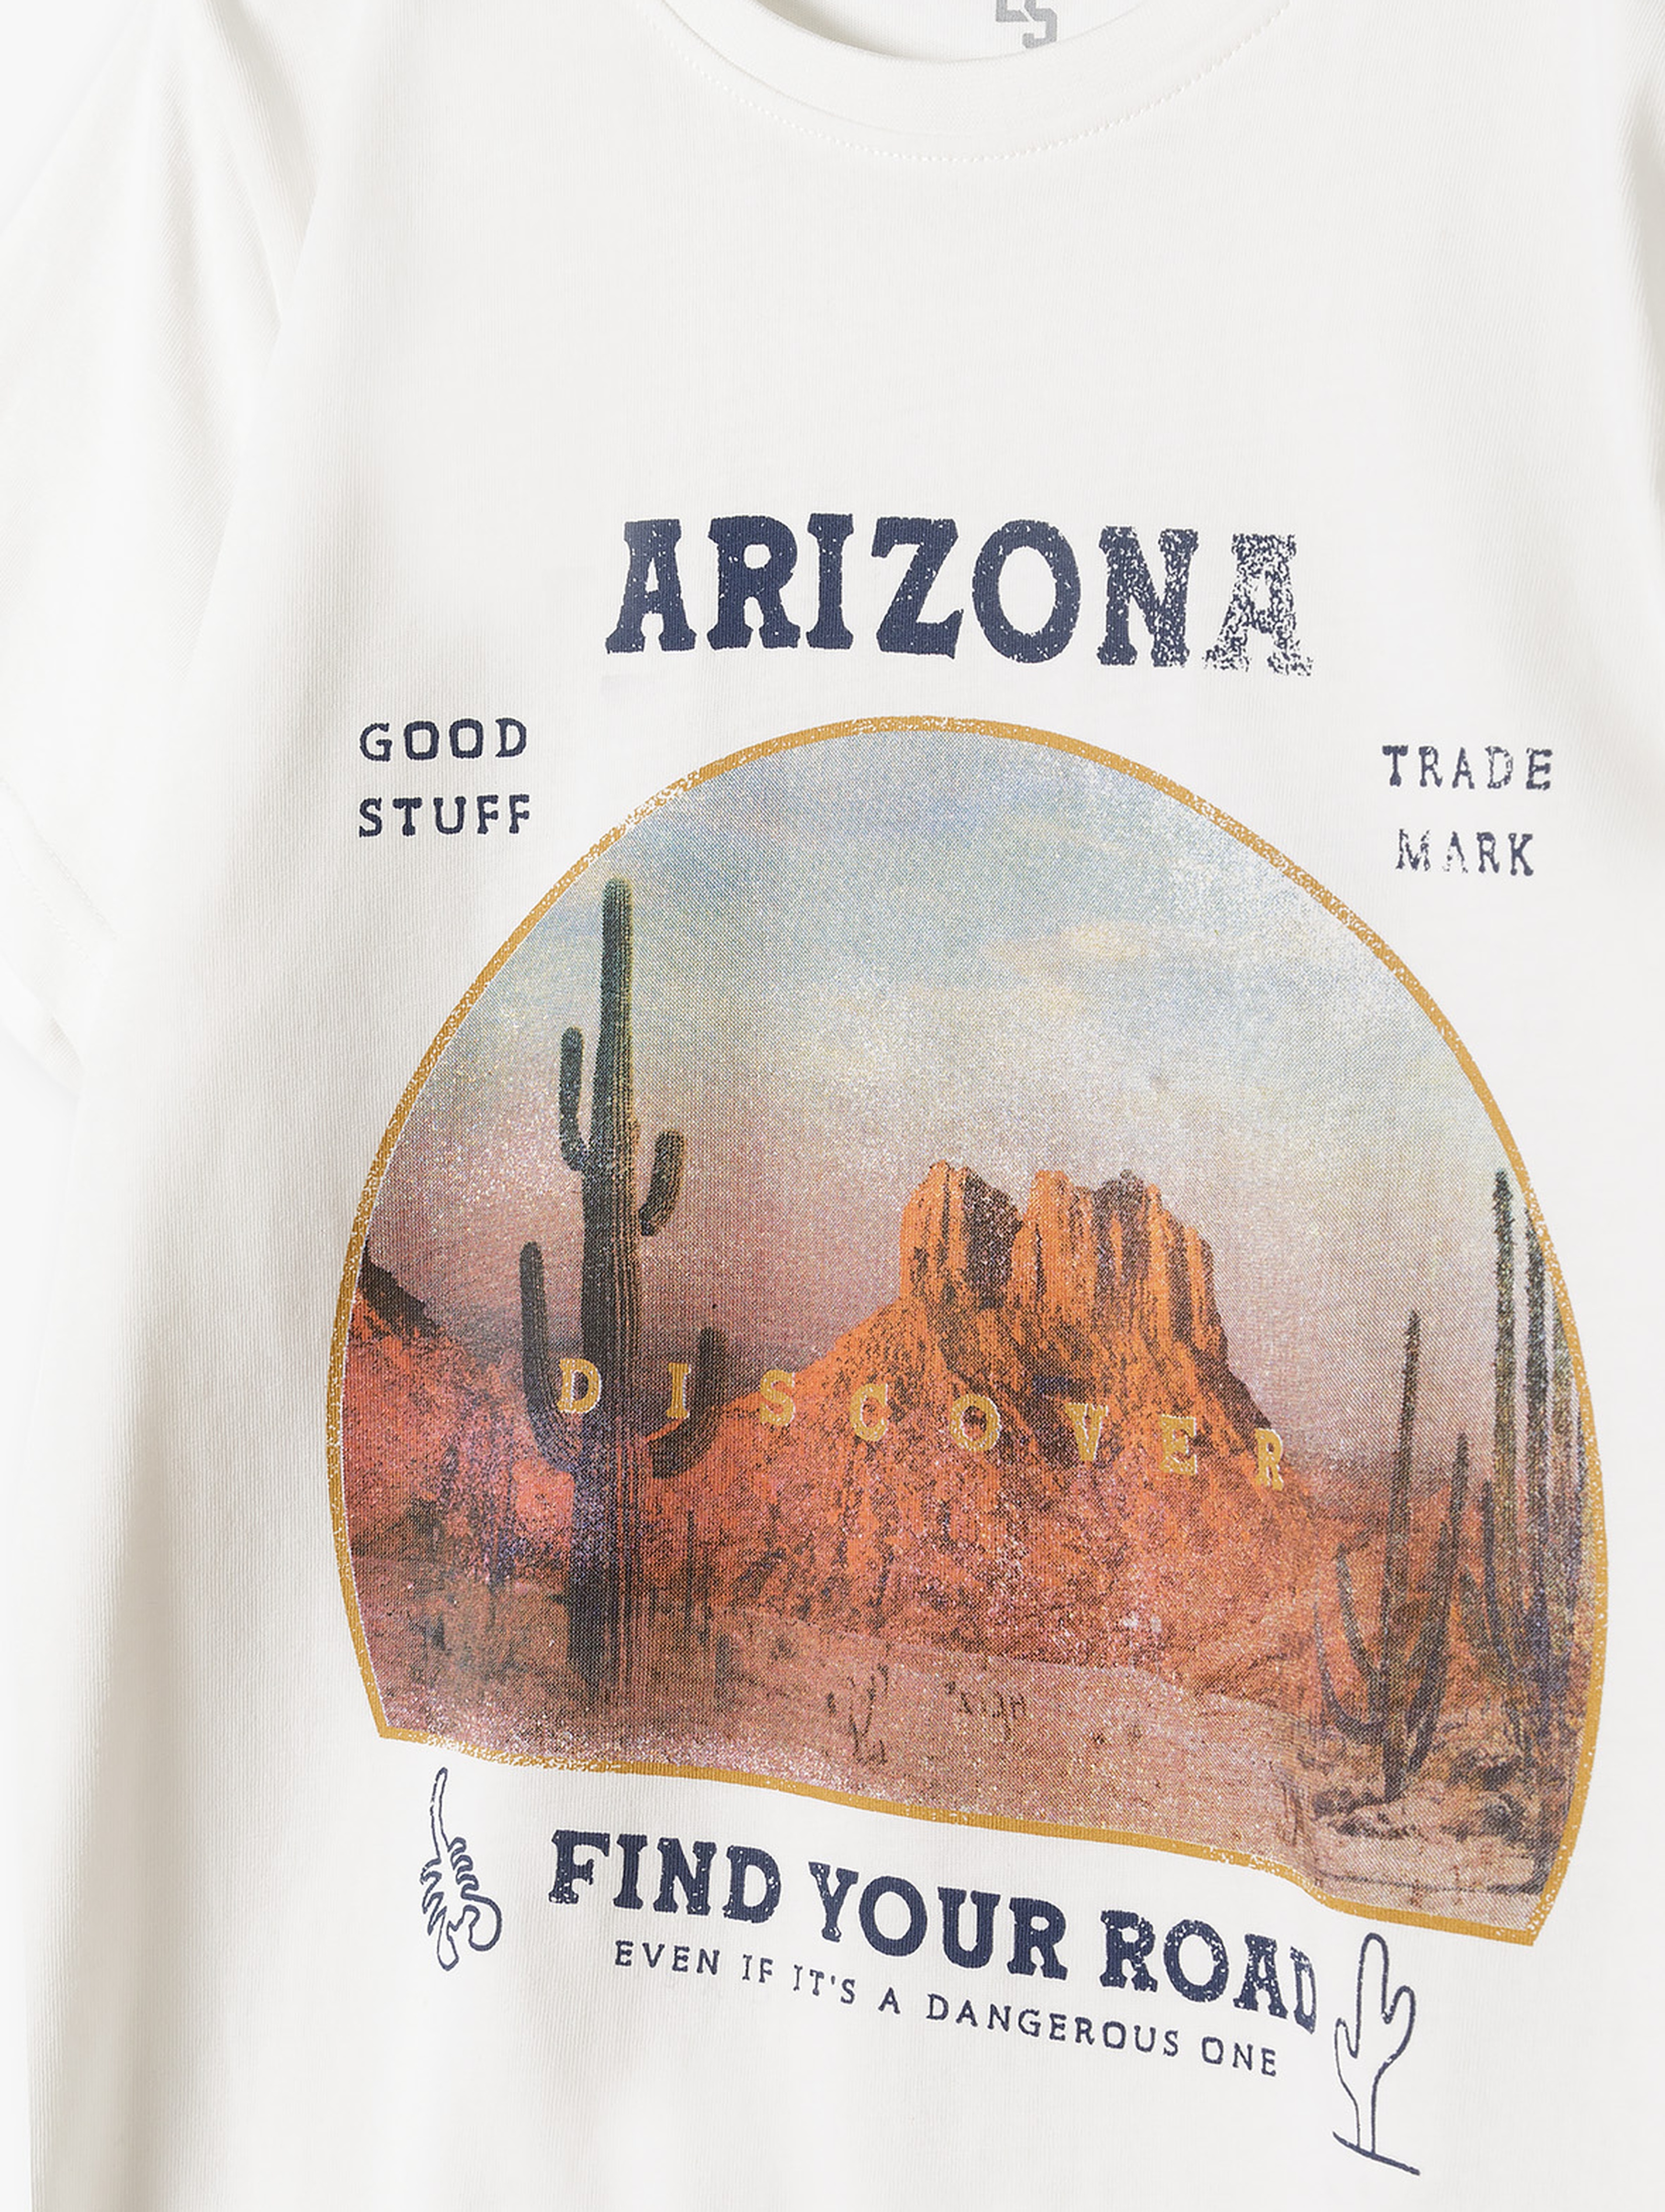 T-shirt bawełniany dla chłopca z nadrukiem - Arizona